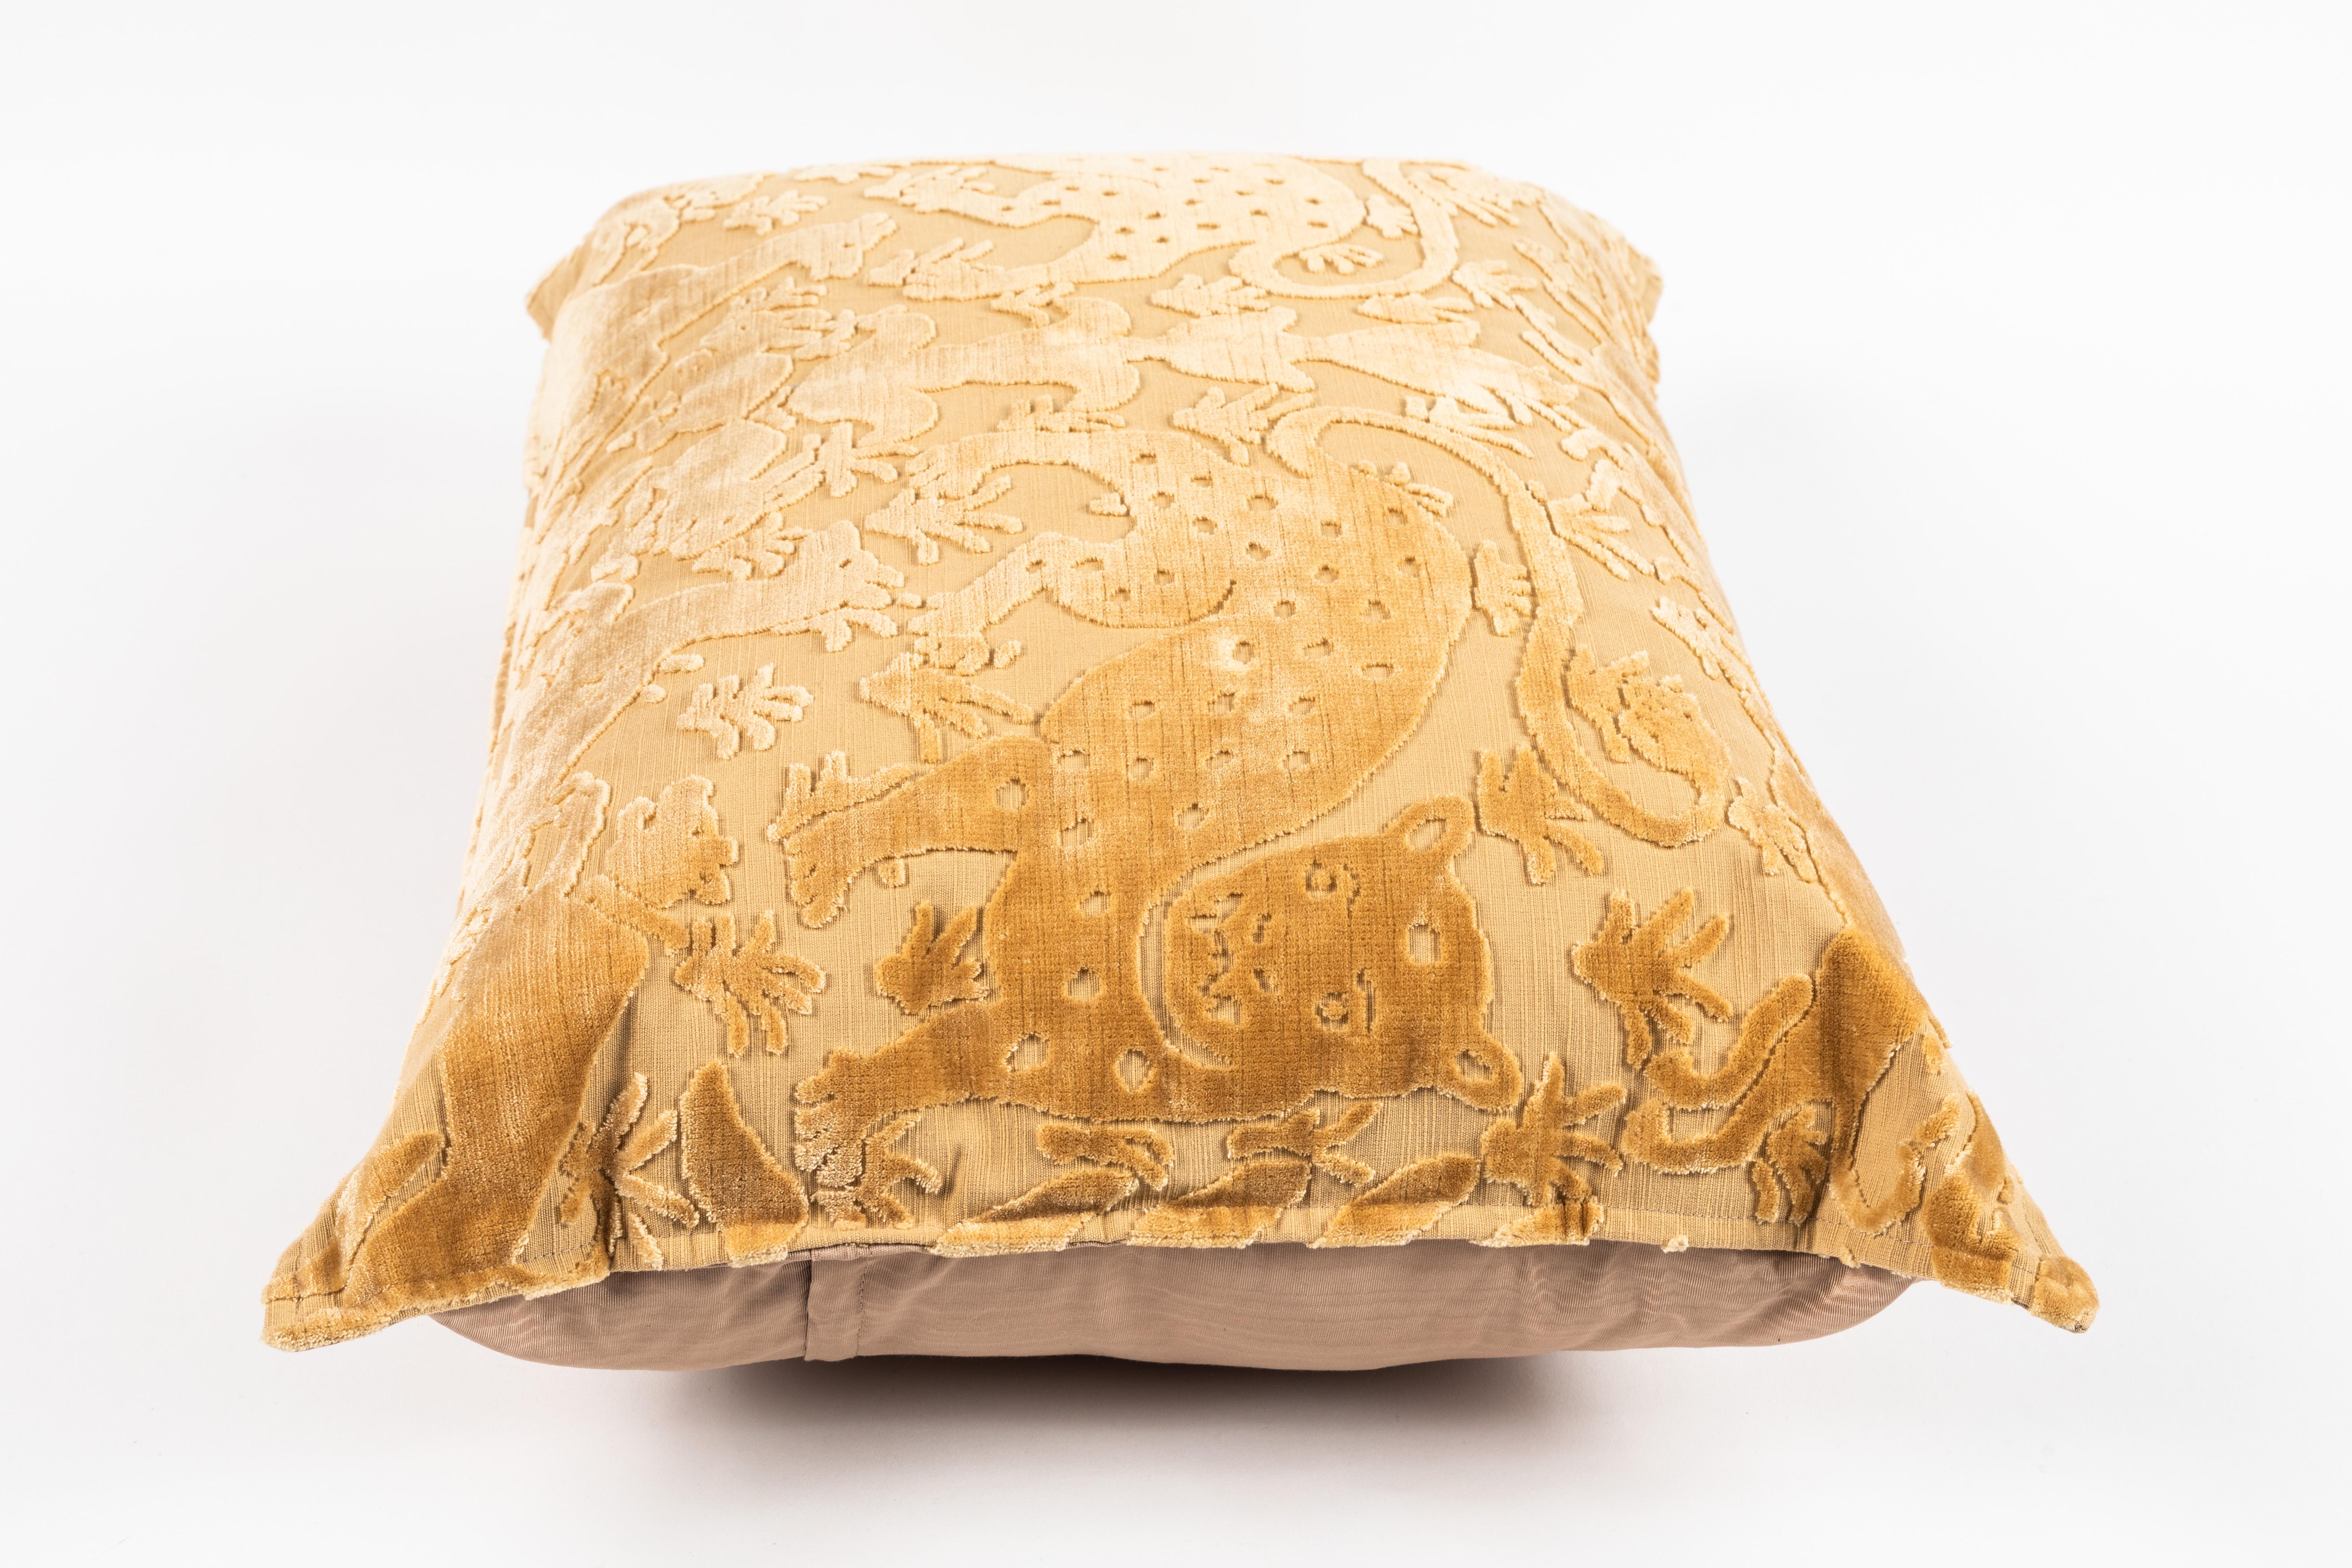 Bevilacqua Animal Motif 'Bestiario' Handcut Gold Velvet Pillow 2